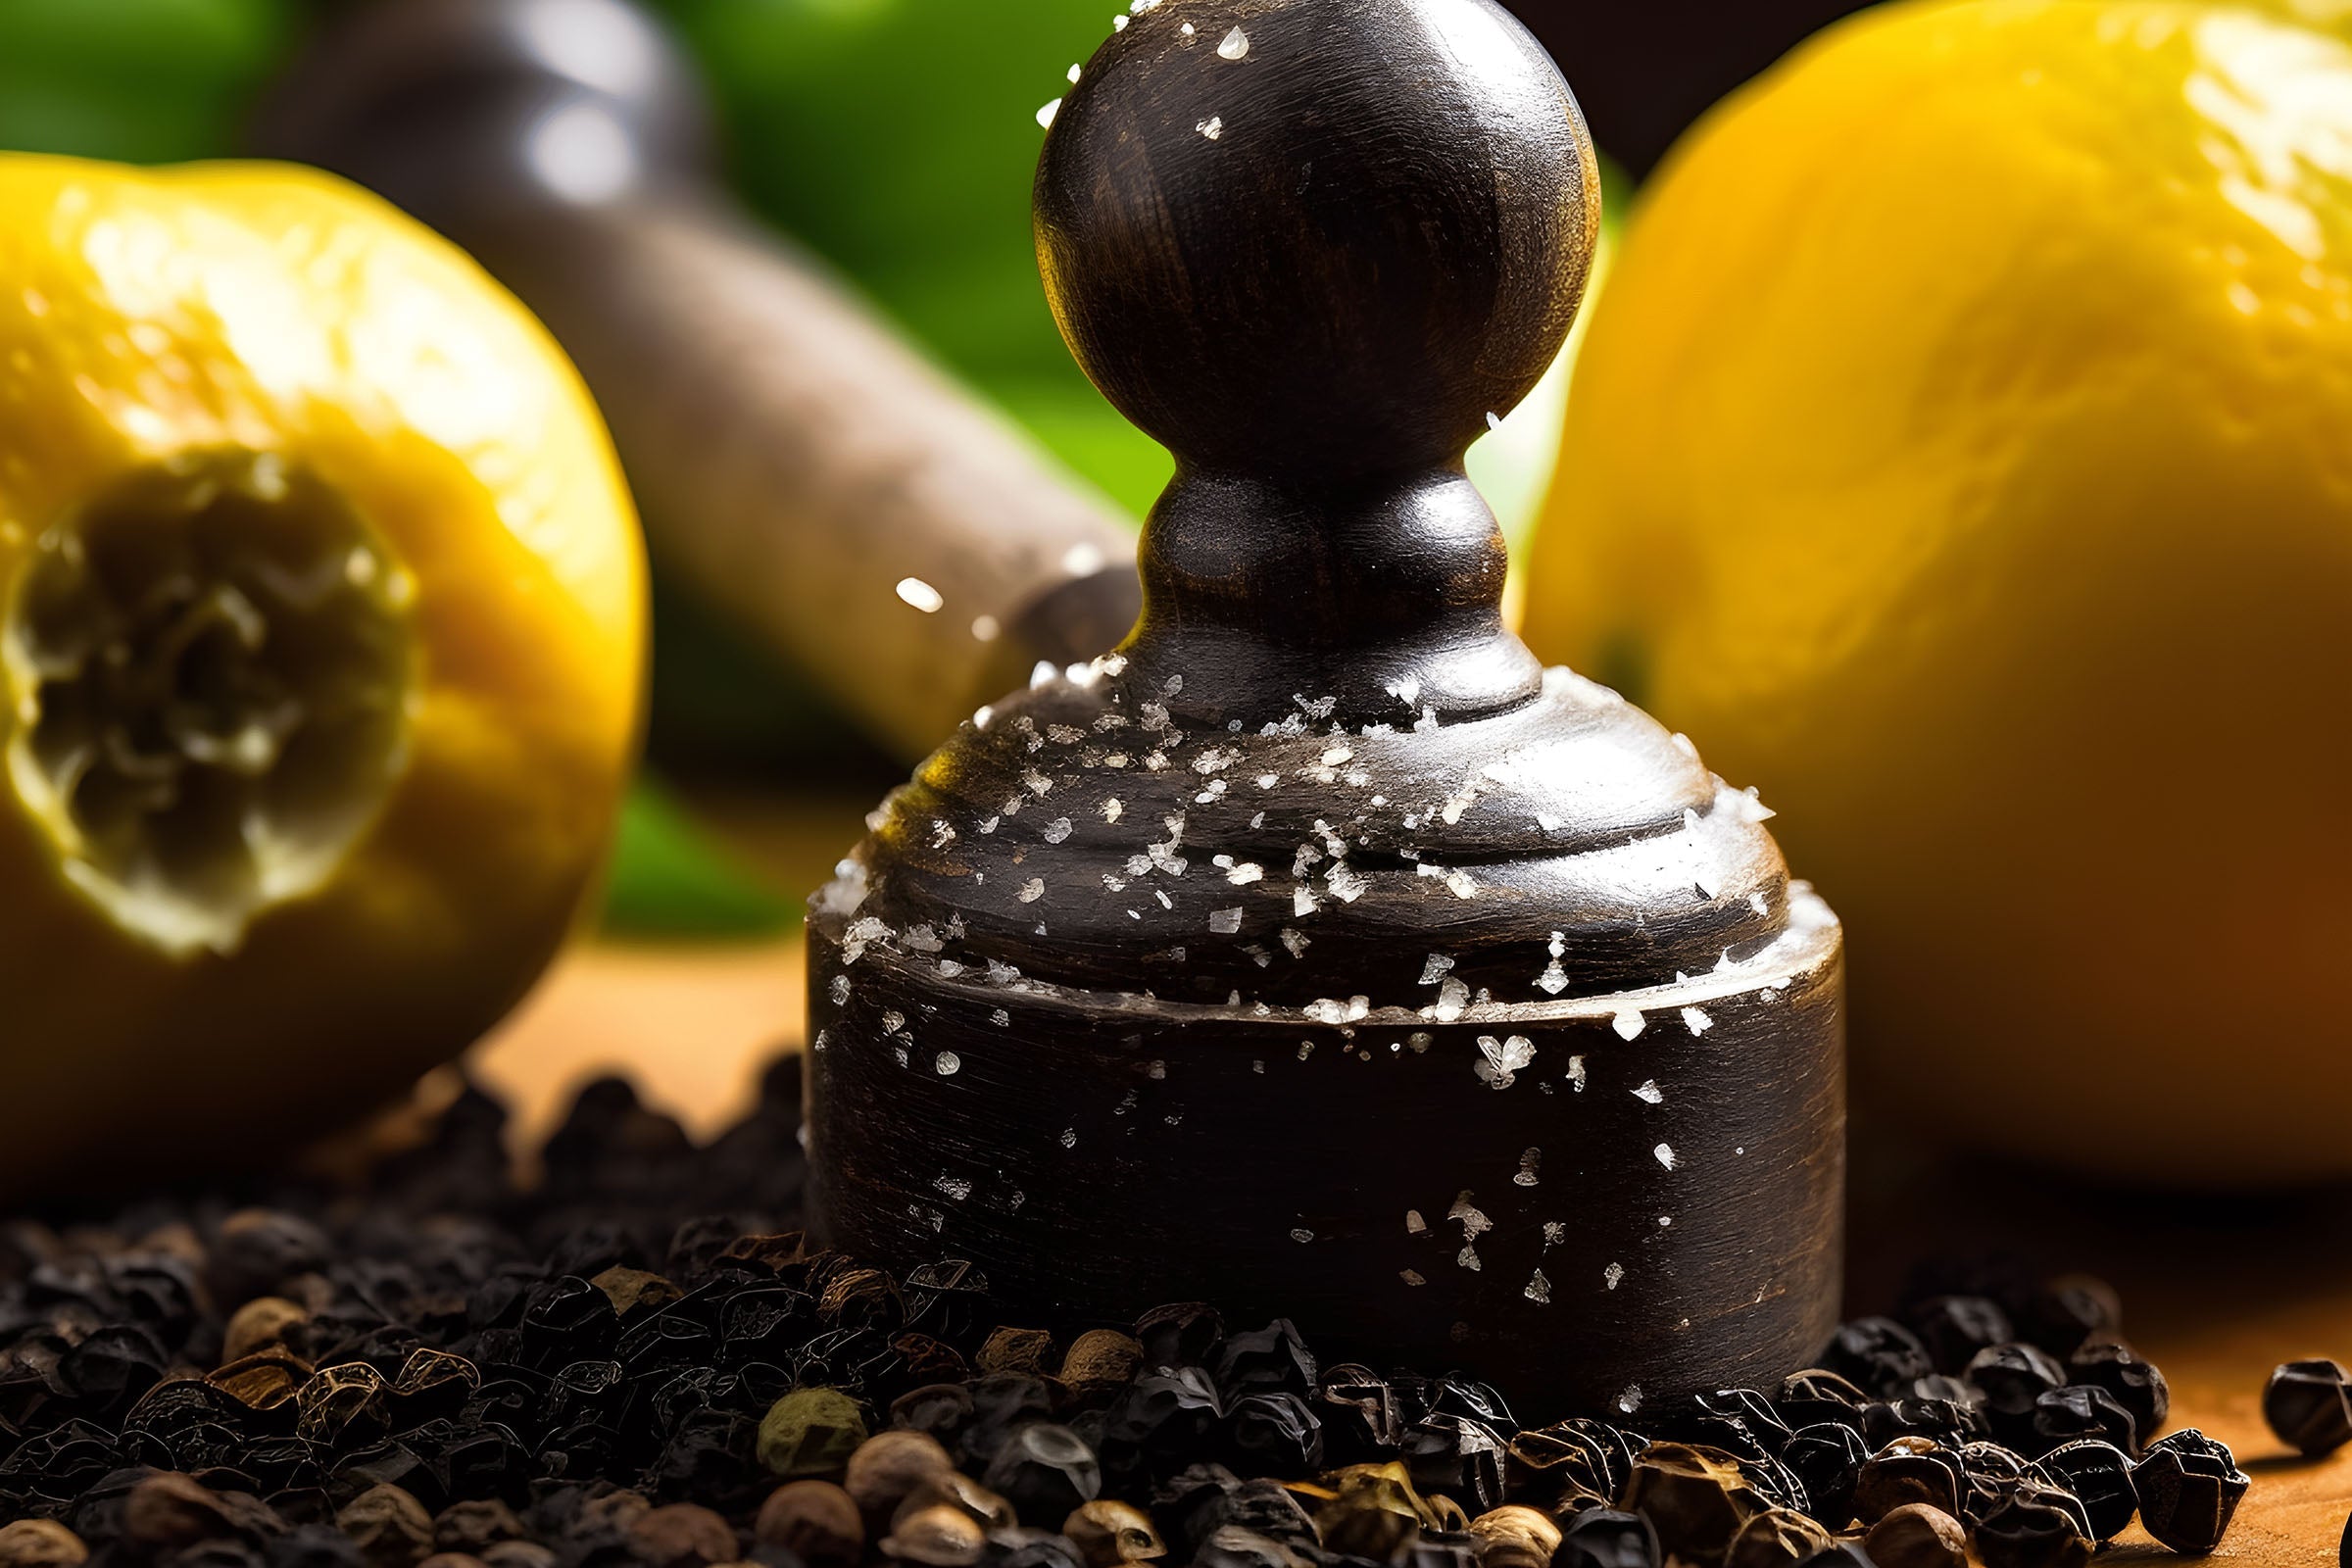 Black Pepper & Bergamot Slatkin Type Fragrance Oil